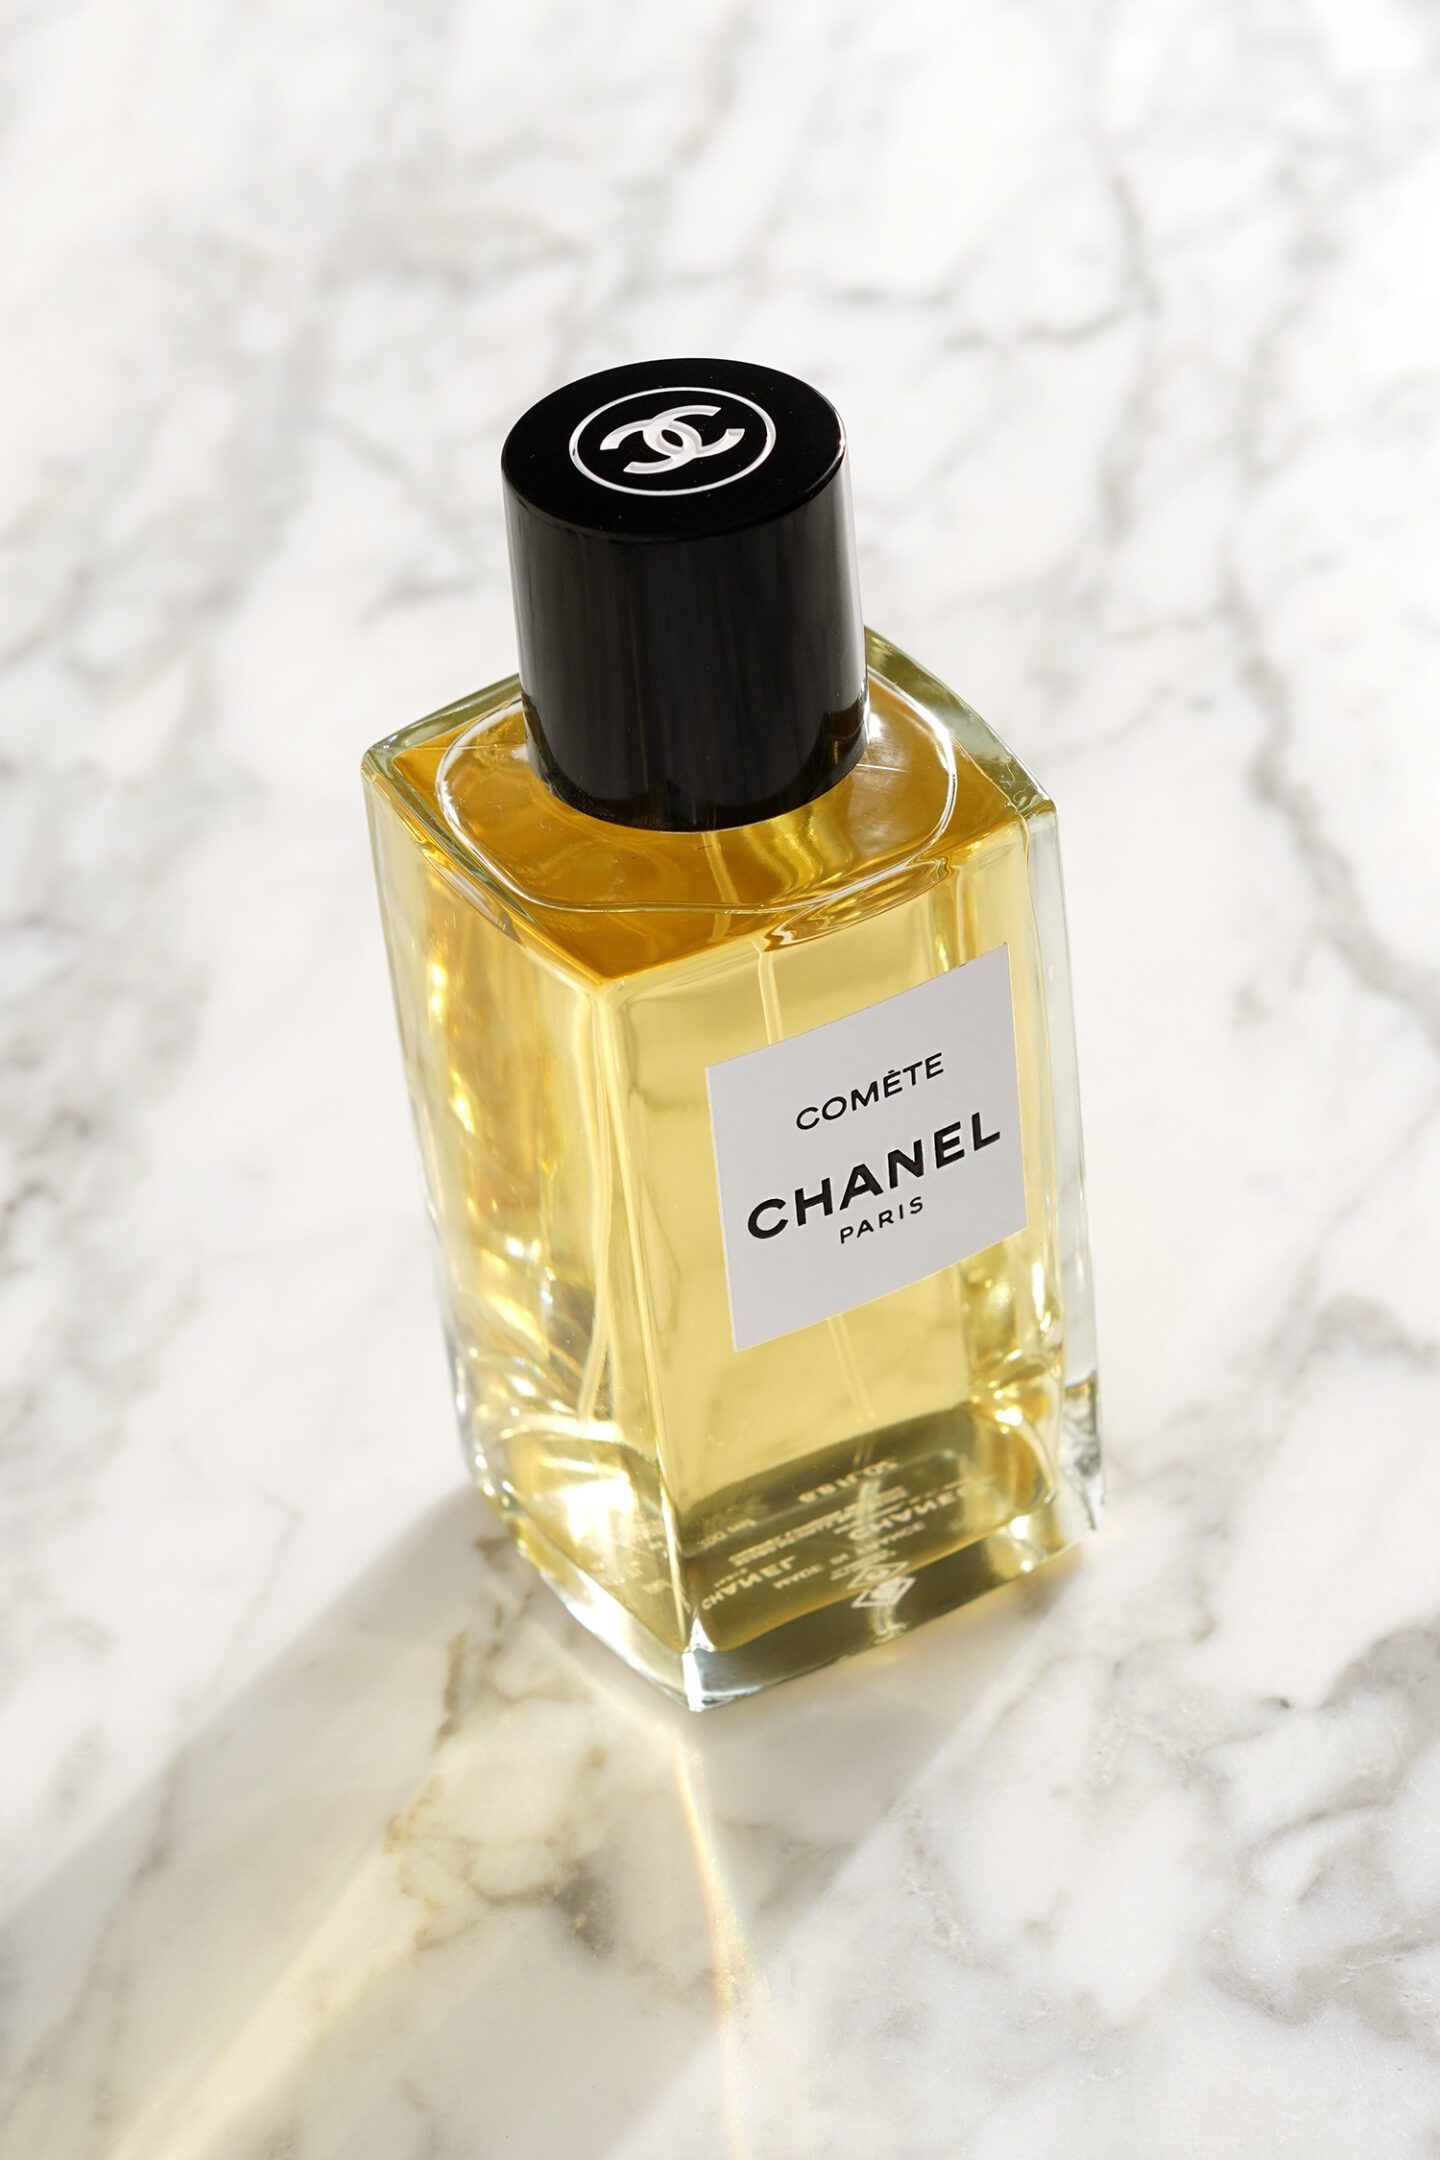 Chanel Les Exclusifs Comete